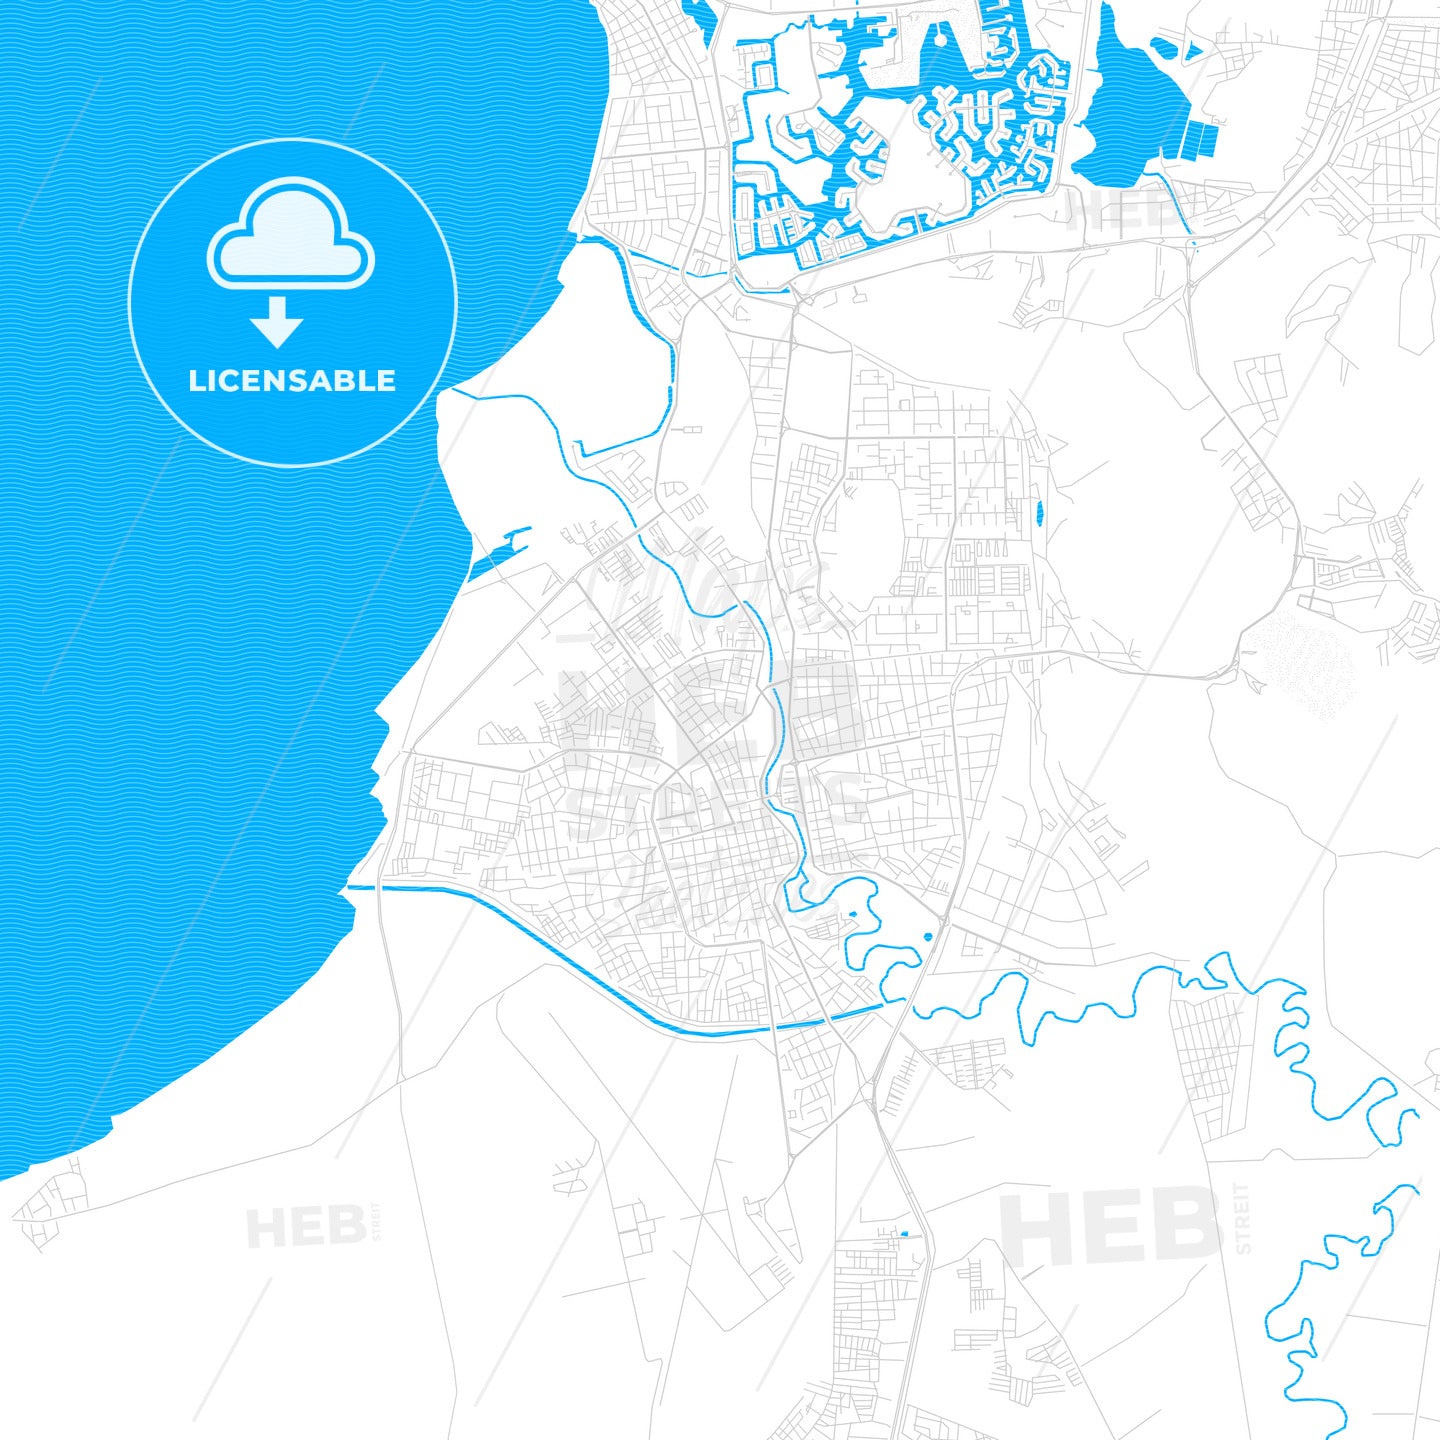 Barcelona, Venezuela PDF vector map with water in focus